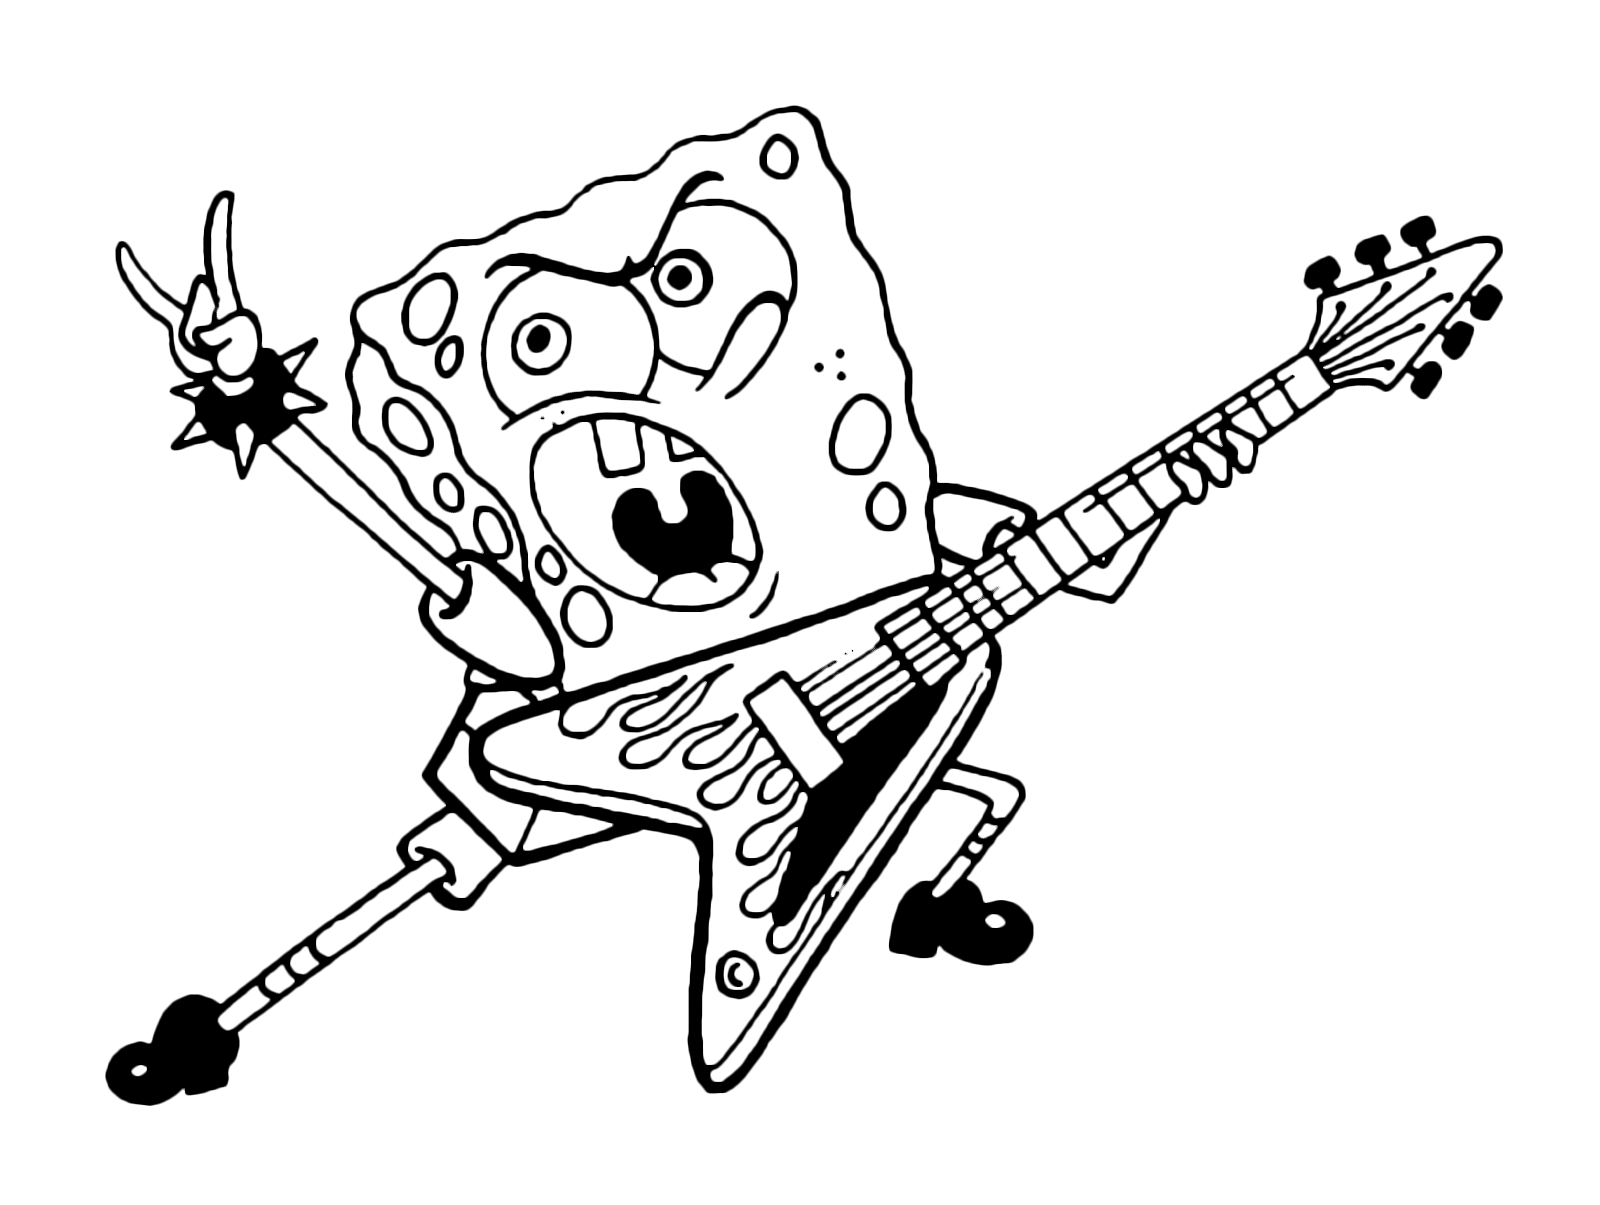 SpongeBob suona la chitarra elettrica e un vero musiciscta rock